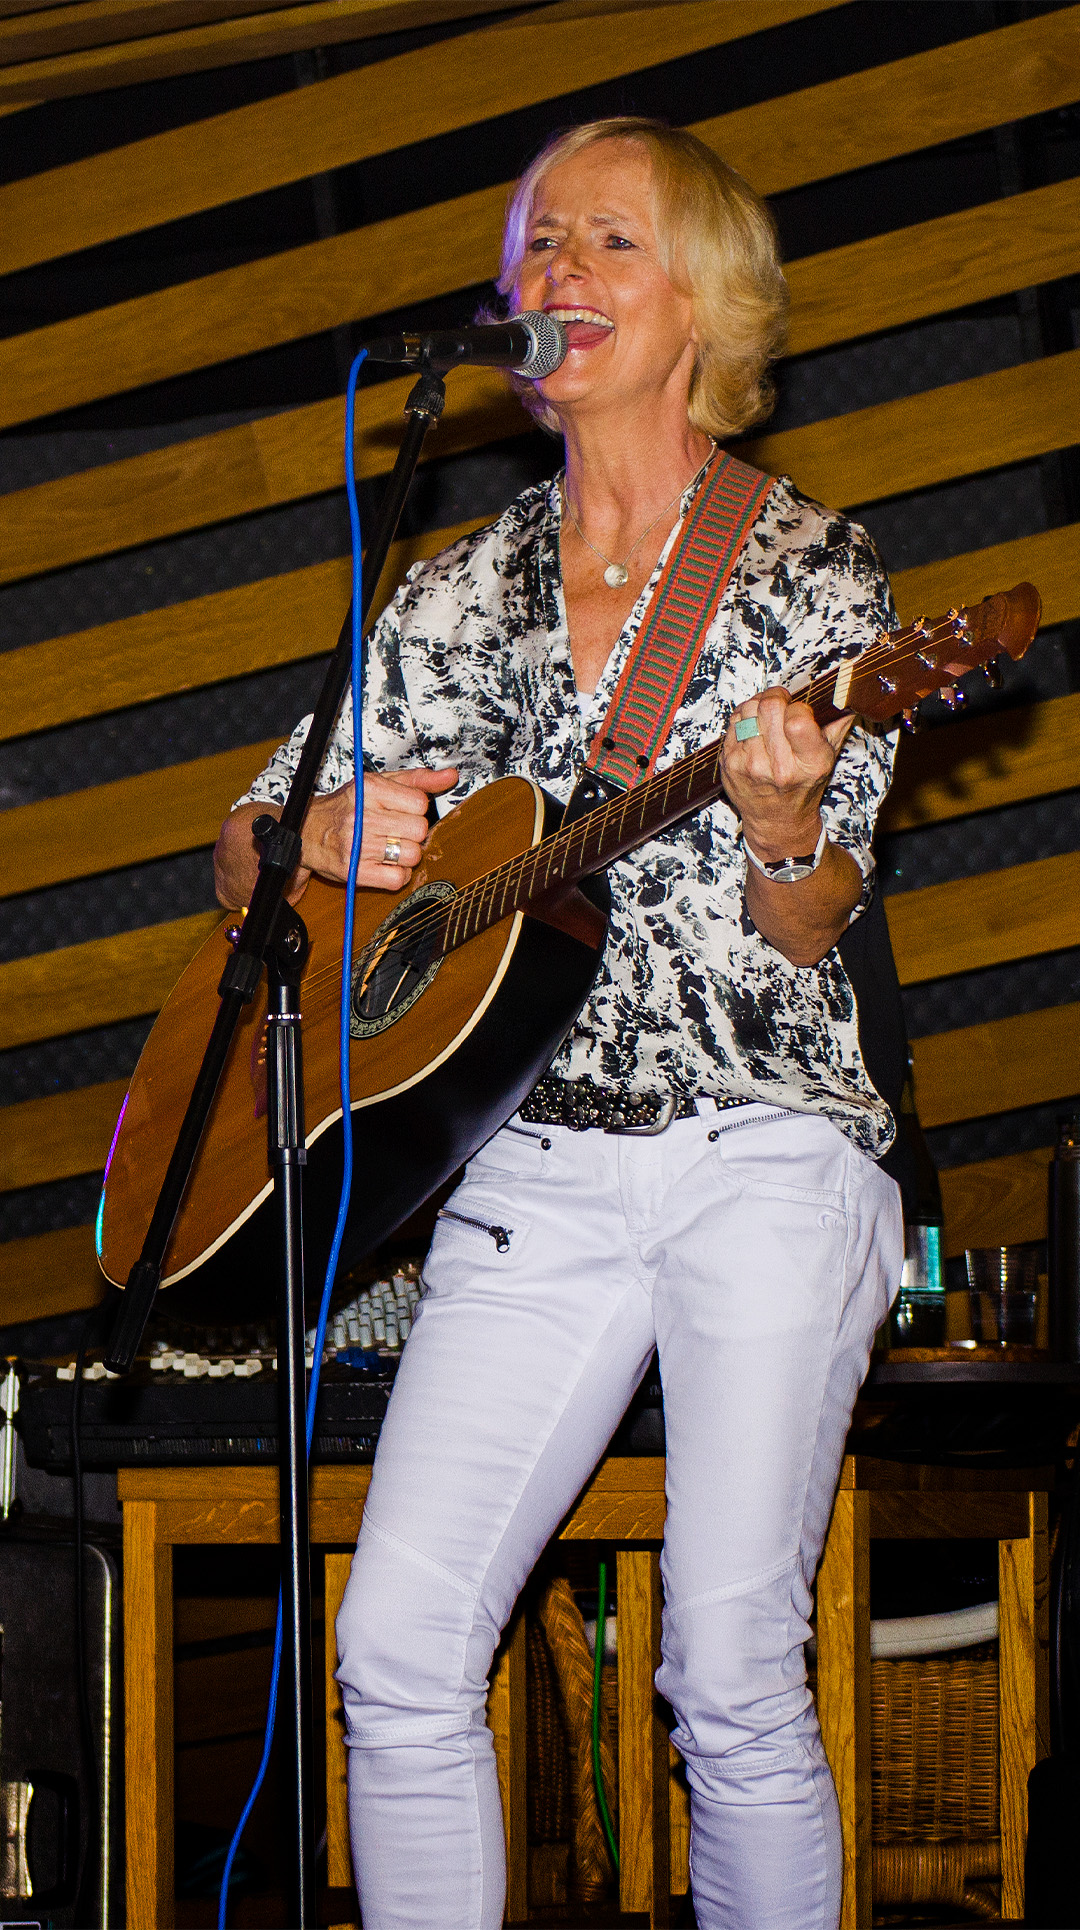 Annette Korn live Musik:
Annette singend bei einem live Auftritt mit ihrer Gitarre. 